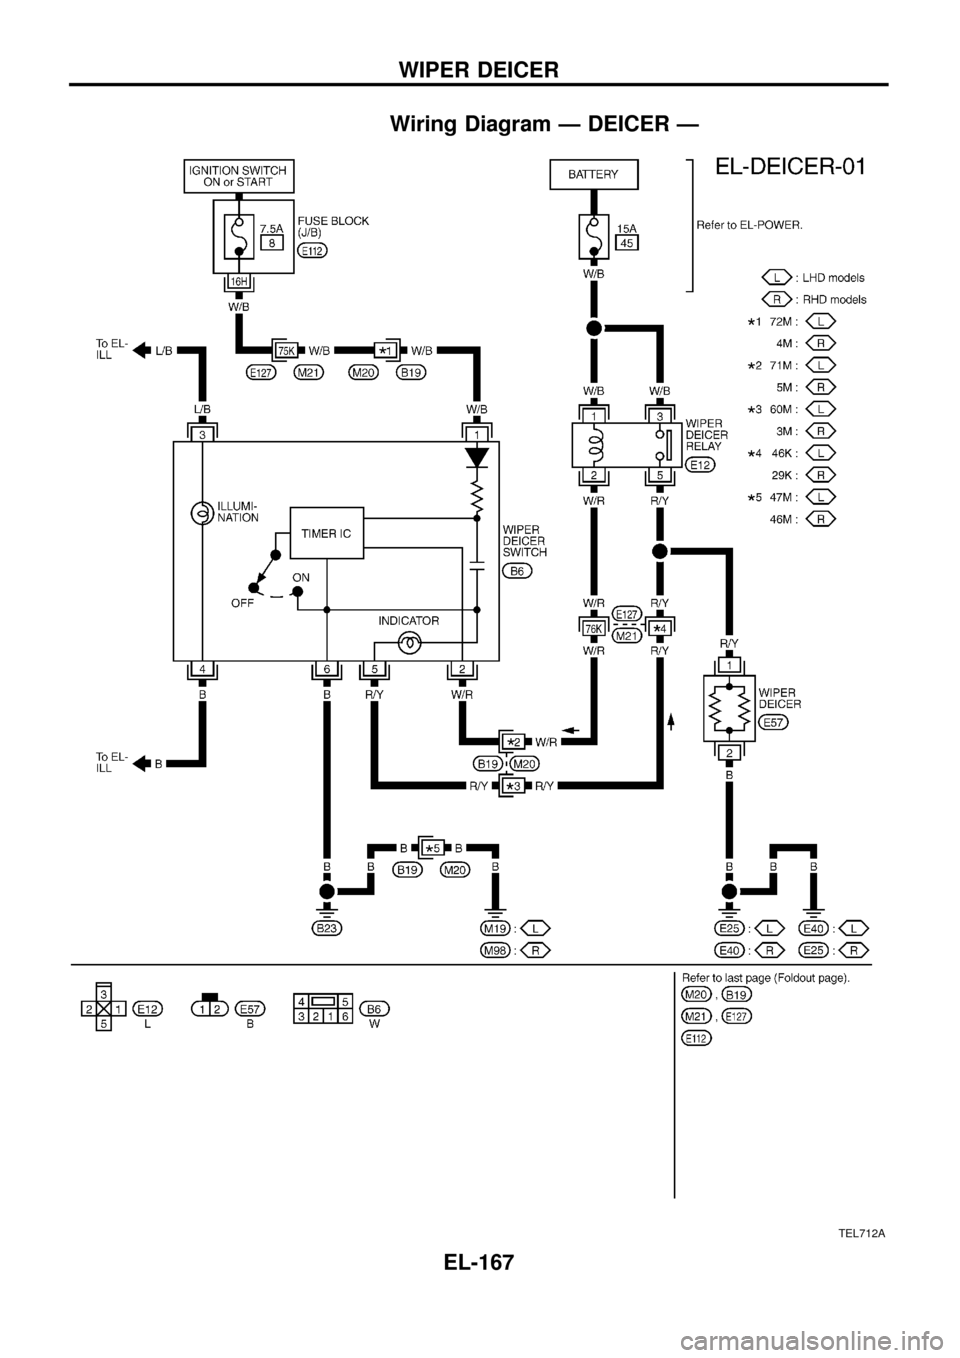 NISSAN PATROL 1998 Y61 / 5.G Electrical System Workshop Manual Wiring Diagram Ð DEICER Ð
TEL712A
WIPER DEICER
EL-167 